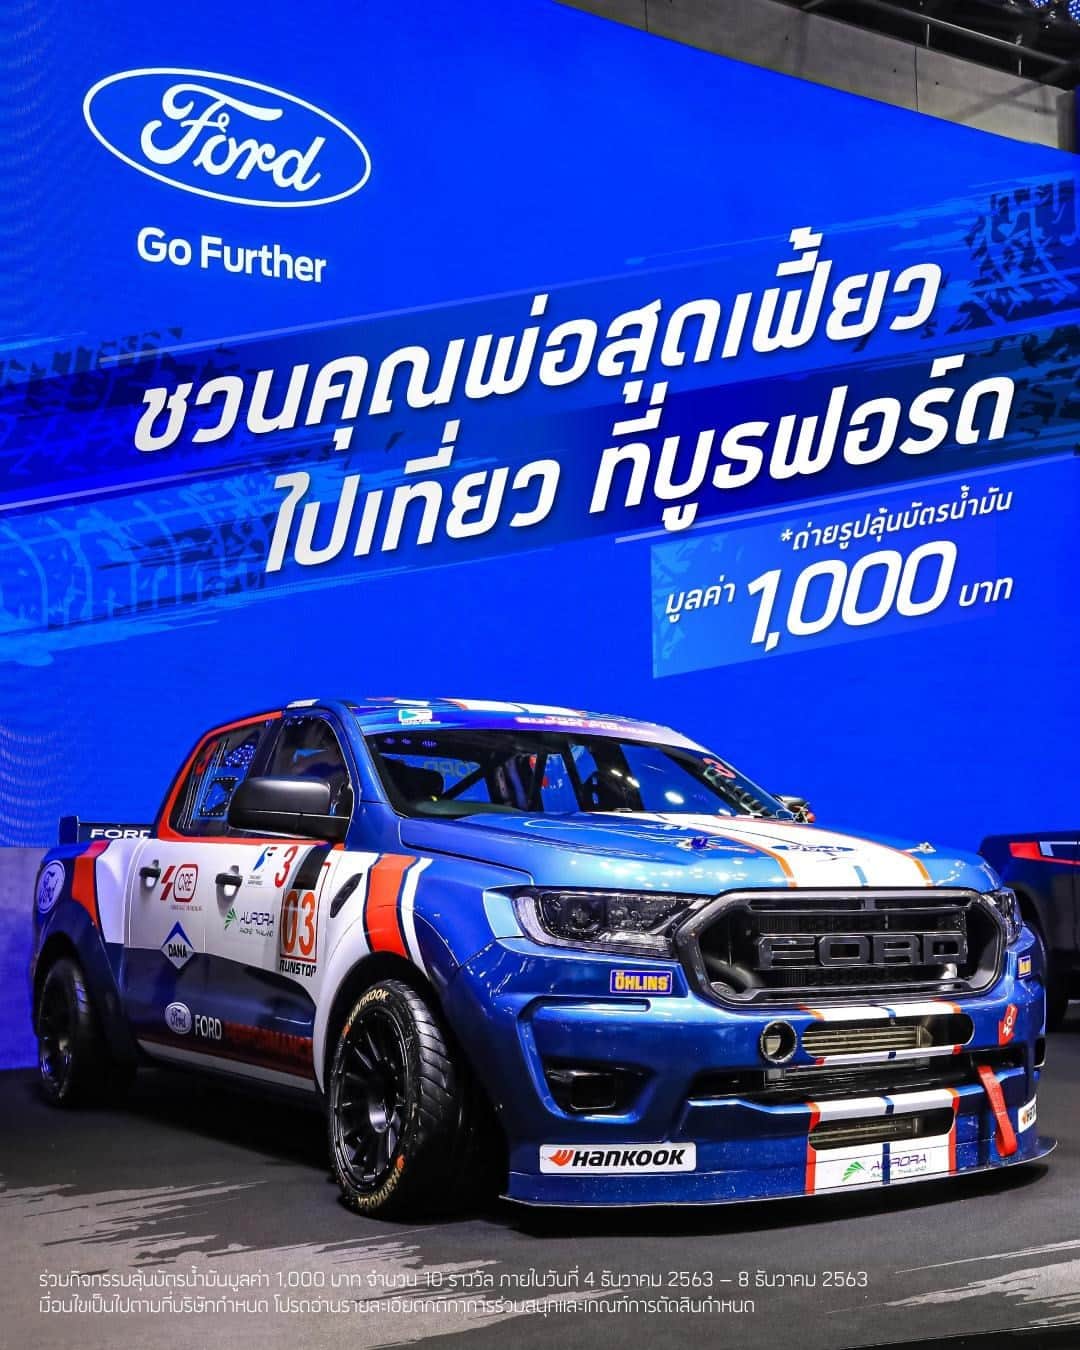 Ford Thailandのインスタグラム：「🏎 วันพ่อปีนี้ ฟอร์ดชวนคุณพ่อไปเที่ยวที่งาน Motor Expo 2020  และร่วมกิจกรรมภายในวันที่ 4 ธันวาคม 2563 – 8 ธันวาคม 2563 โดยถ่ายภาพโชว์ความเฟี้ยว คู่กับรถยนต์ที่จัดแสดงในบูธฟอร์ด ไม่ว่าจะเป็น - ฟอร์ด มัสแตง 2020 รุ่นฉลองครบ 55 ปี - รถแข่งฟอร์ด เรนเจอร์ คันจริงที่ใช้แข่งขันในรายการ Thailand Super Series 2020 - ฟอร์ด เรนเจอร์ รุ่น XL สตรีท และรุ่นอื่นๆ - รวมถึงฟอร์ด เอเวอเรสต์ พิเศษเฉพาะในวันที่ 6 ธันวาคม พบกับคุณแซนดี้ สตูวิค นักขับรถแข่งทีมฟอร์ด ไทยแลนด์ เรซซิ่ง (FTR) ได้ที่บูธฟอร์ด ตั้งแต่เวลา 12.30 น. เป็นต้นไป  10 ภาพที่โดนใจเรามากที่สุด และทำตามกติกาได้อย่างถูกต้อง จะได้รับบัตรน้ำมันมูลค่า 1,000 บาทท่านละ 1 ใบ  กติกาการร่วมสนุก โพสต์ภาพคุณพ่อคู่กับรถฟอร์ดที่จัดแสดงภายในบูธฟอร์ด พร้อมคำบรรยายว่าทำไมคุณพ่อถึงเหมาะกับรถรุ่นนี้ ใน Instagram พร้อมแฮชแท็ก #FordMotorExpo2020 และตั้งค่าเป็นสาธารณะ (public) ร่วมกิจกรรมเพื่อลุ้นรับบัตรเติมน้ำมันมูลค่า 1,000 บาท ได้ตั้งแต่วันที่ 4 ธันวาคม 2563 – 8 ธันวาคม 2563  เกณฑ์การตัดสิน - ภาพถ่ายมีความคมชัด และครบถ้วนตามกติกา - ข้อความบรรยายมีความน่าสนใจ ตรงตามกติกา  * ประกาศผลผู้ได้รับรางวัลวันที่ 9 ธันวาคม 2563 ที่ Facebook ฟอร์ด * การพิจารณาและการตัดสินของบริษัทถือเป็นที่สิ้นสุด * ผู้ได้รับรางวัลจะต้องส่งรายละเอียดที่อยู่สำหรับการจัดส่งรางวัลทางไปรษณีย์ และหลักฐานยืนยันตัวตนของตนเองและคุณพ่อภายใน 7 วันหลังจากการประกาศชื่อผู้ได้รับรางวัล」